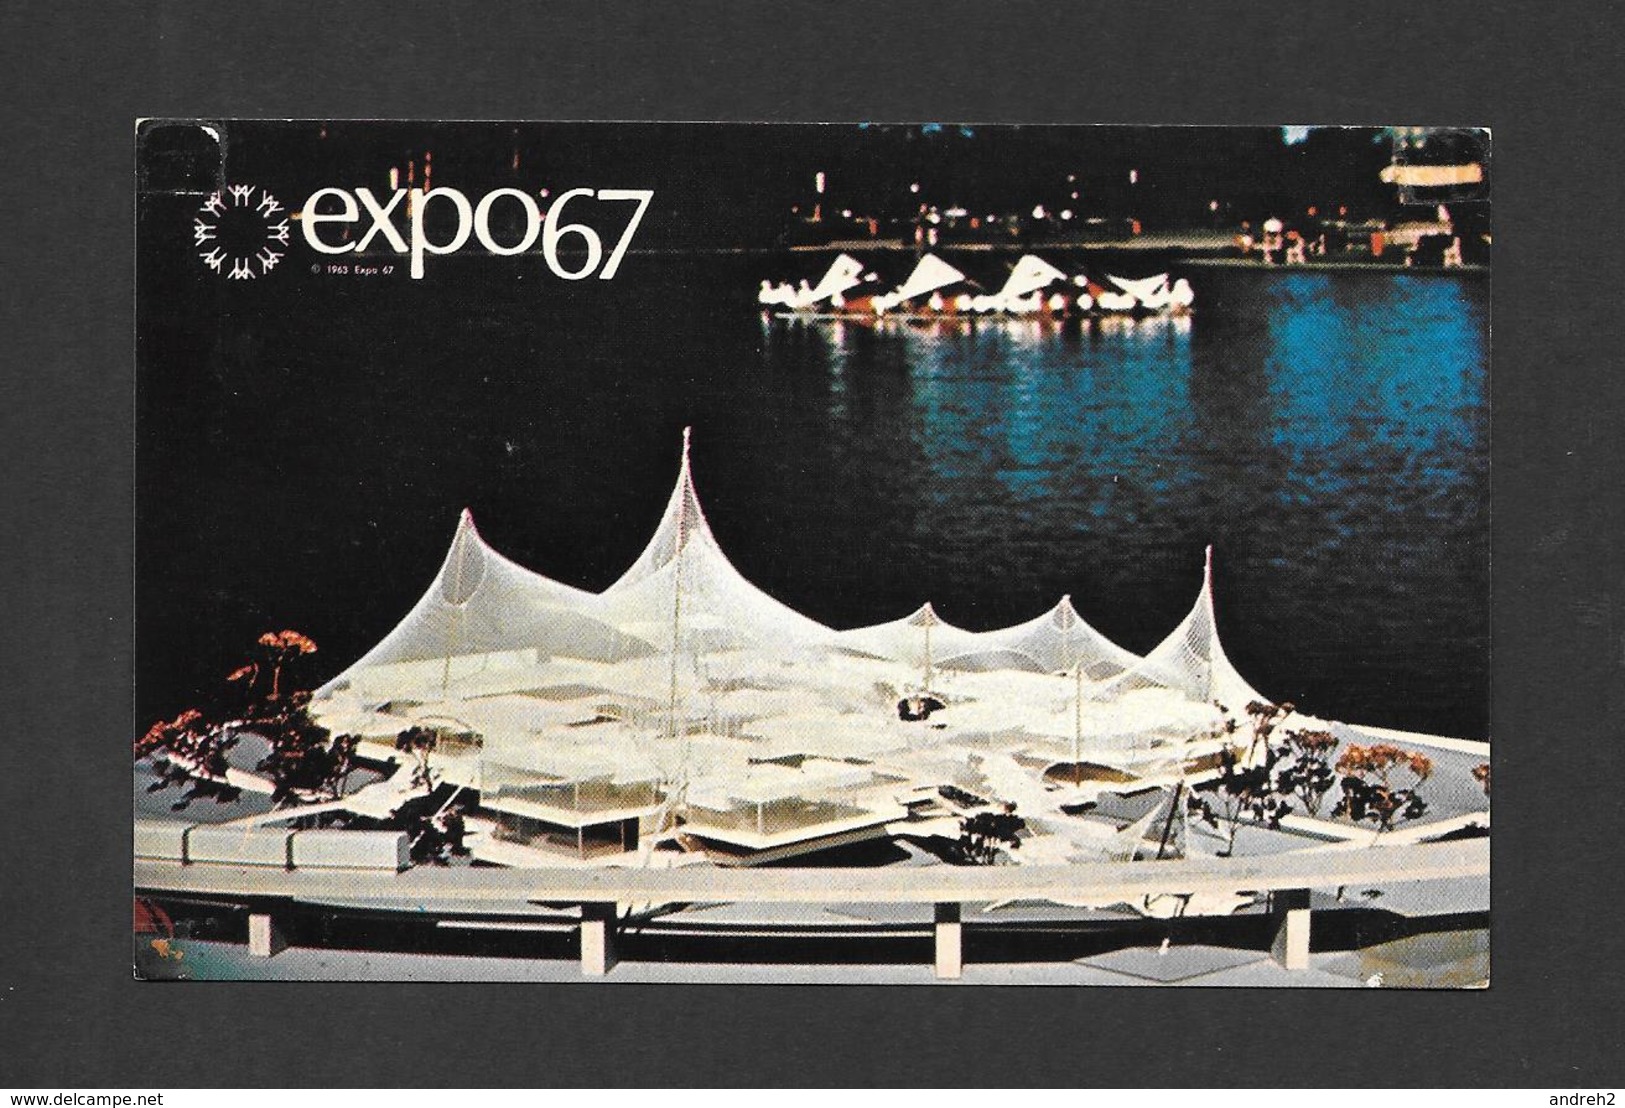 EXPOSITION - EXPO67 - EXPO 67 - MONTRÉAL CANADA  LE PAVILLON DE LA REPUBLIQUE FEDERALE D'ALLEMAGNE - PAVILION OF GERMANY - Exhibitions